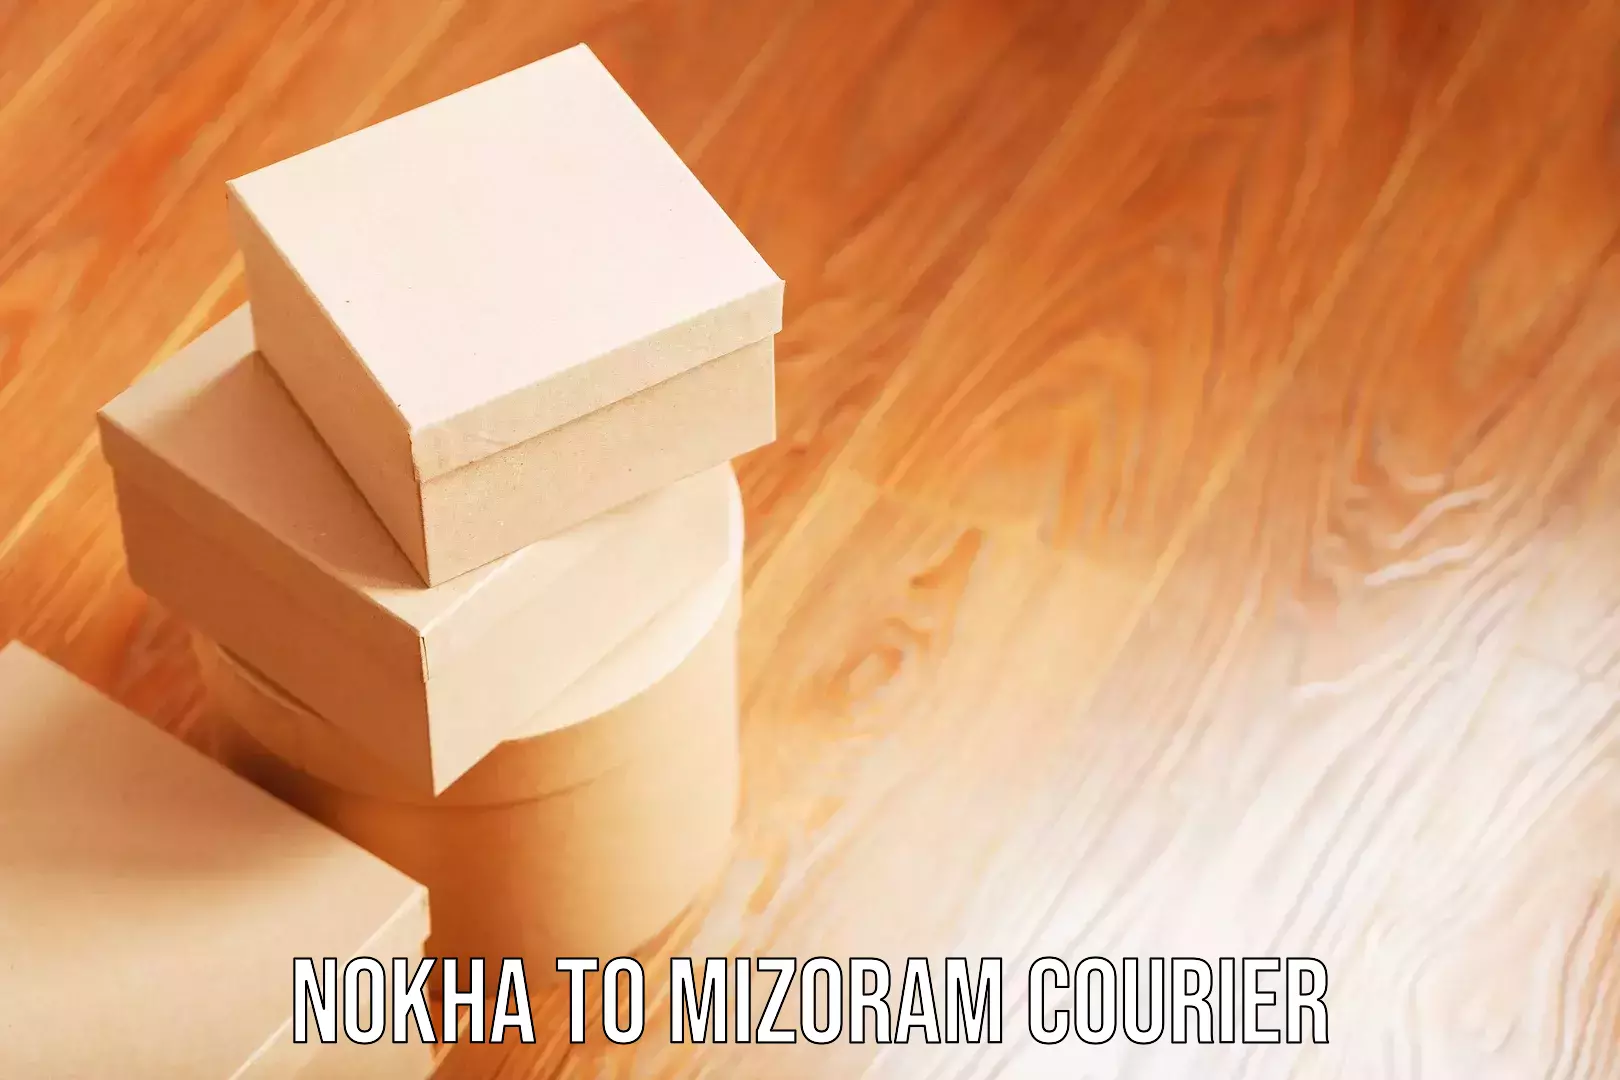 Luggage forwarding service Nokha to Mizoram